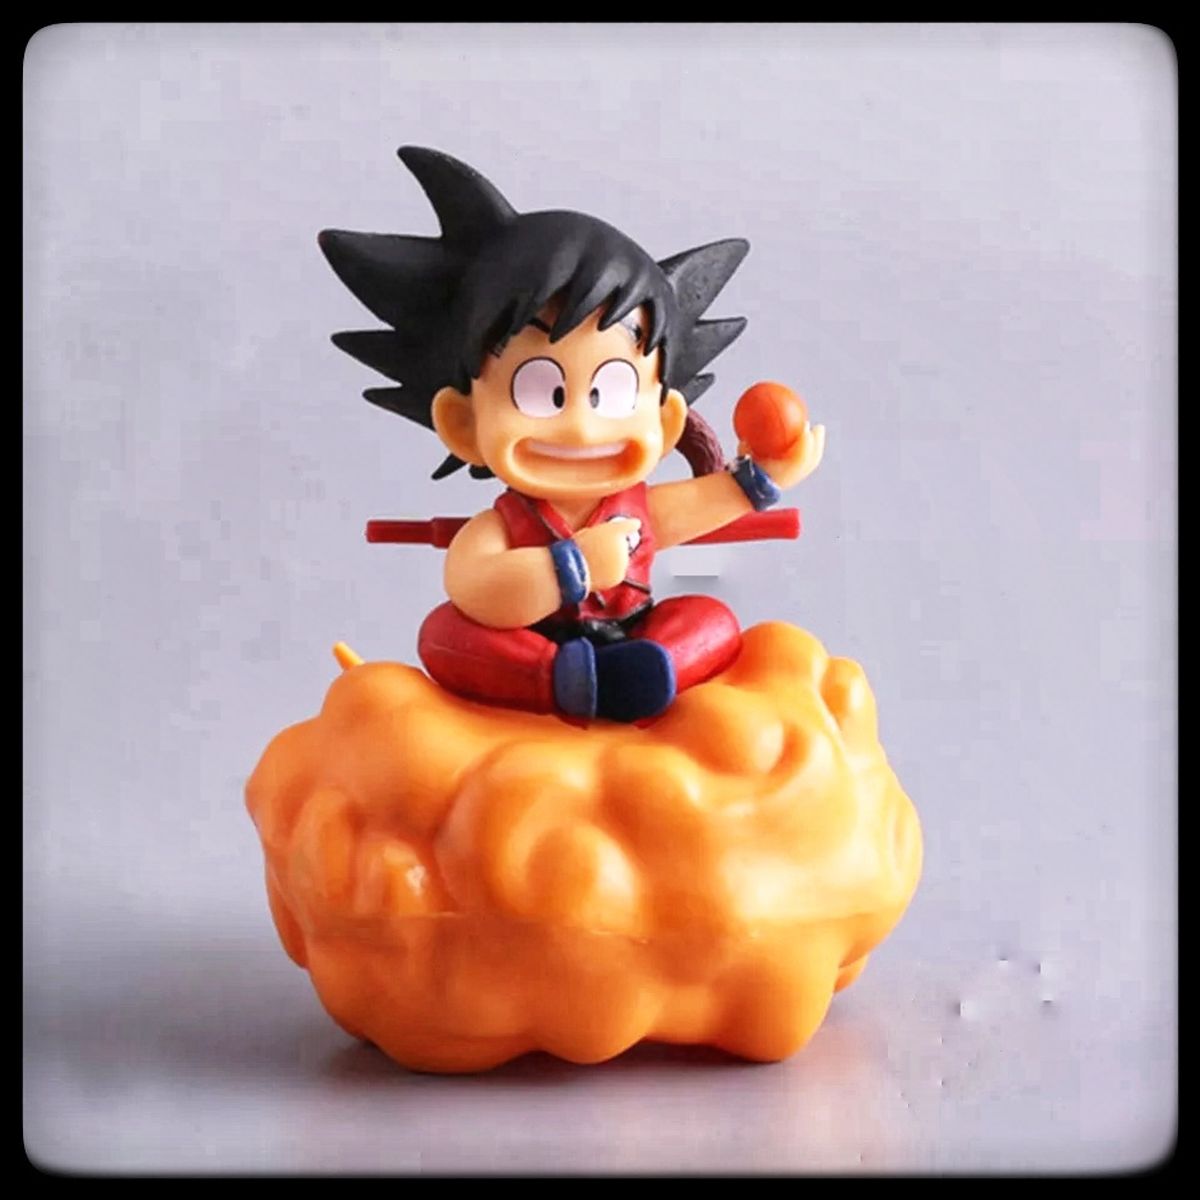 Action Figure Dragon Ball Goku